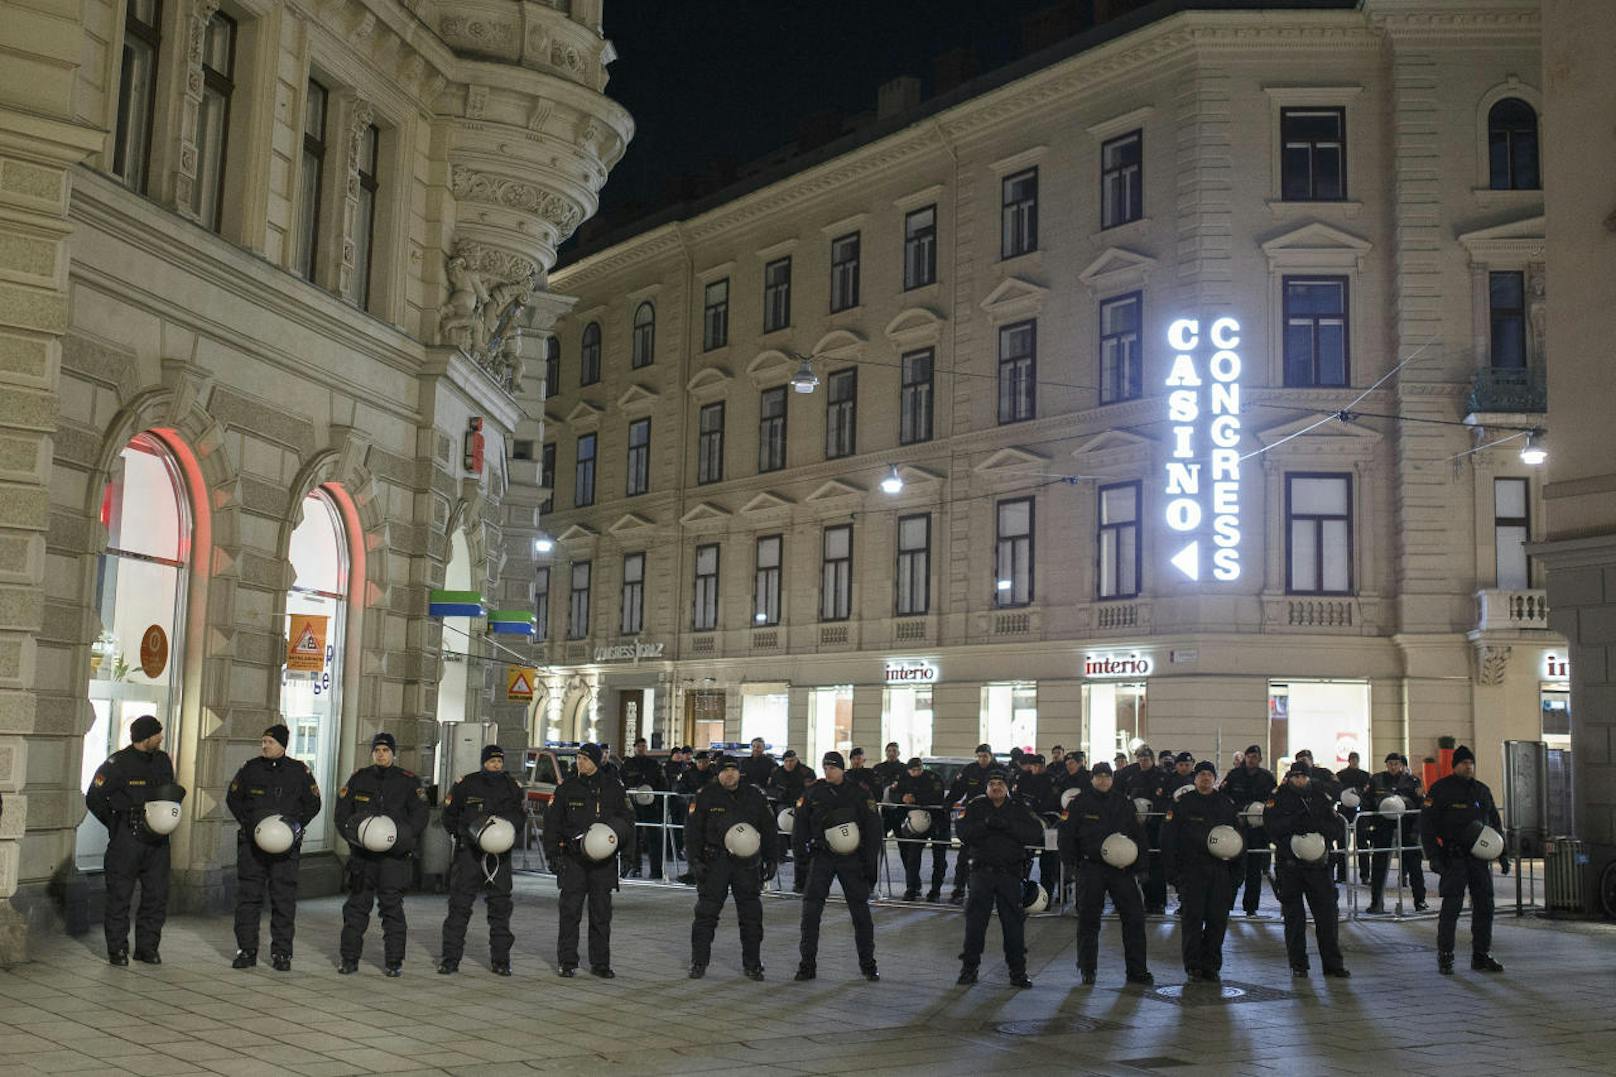 Demonstration der Offensive gegen Rechts gegen den Akademikerball am Samstag, 20. Jänner 2018, in Graz. Im Bild sichern Polizisten die Zufahrtswege zum Congress, in dem der Akademiker Ball stattfindet.